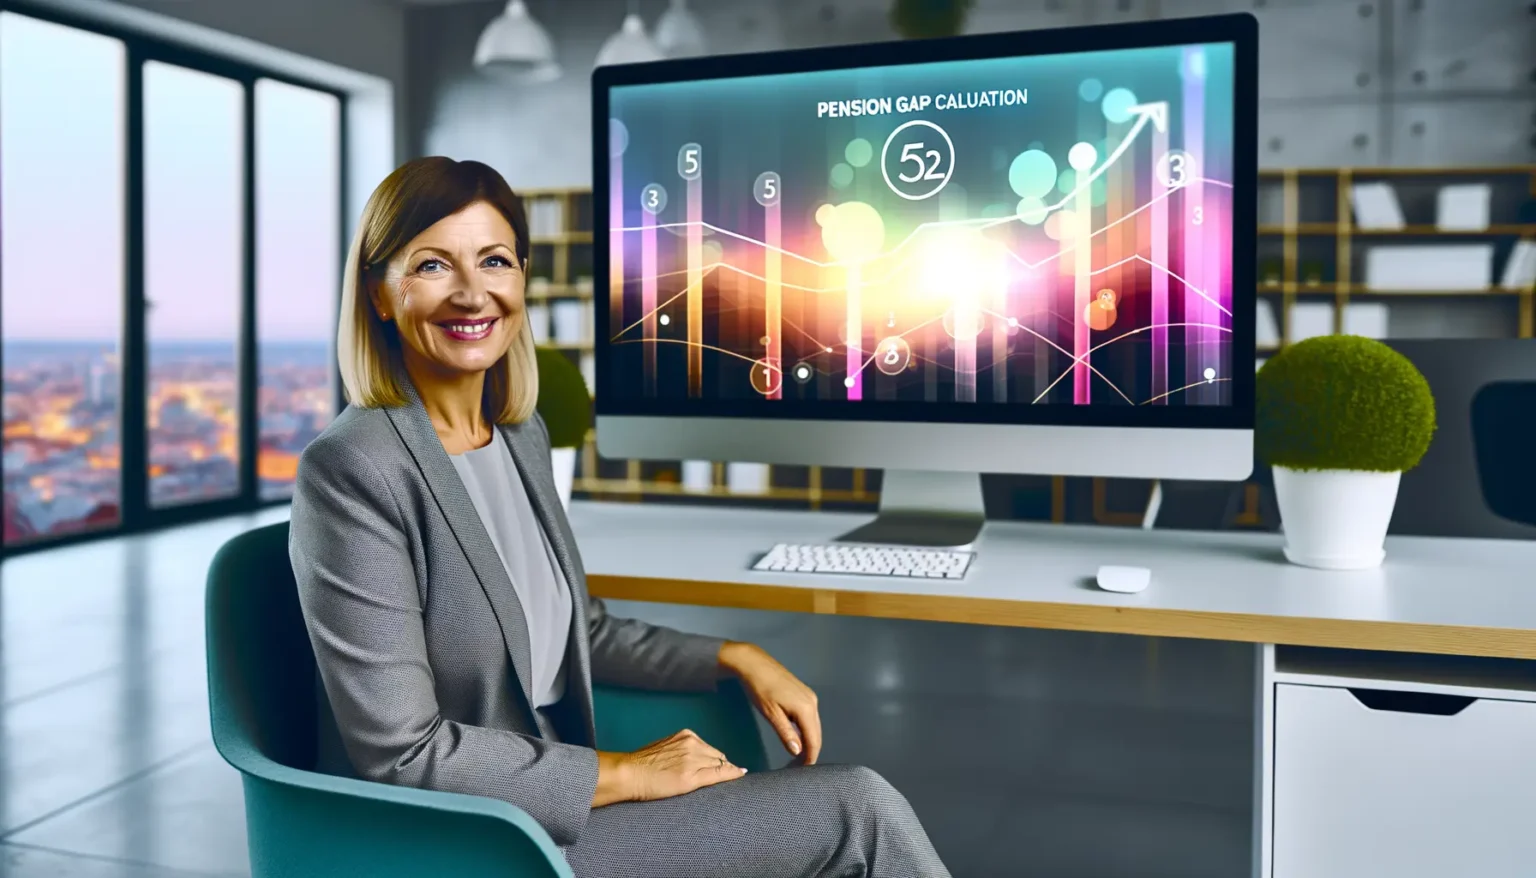 Eine lächelnde Geschäftsfrau in einem modern eingerichteten Büro sitzt an einem Schreibtisch gegenüber einem Computerbildschirm, auf dem eine farbenfrohe Präsentation zur Rentenlückenberechnung zu sehen ist. Im Hintergrund bietet ein großes Fenster einen Blick auf eine städtische Skyline im Dämmerlicht.